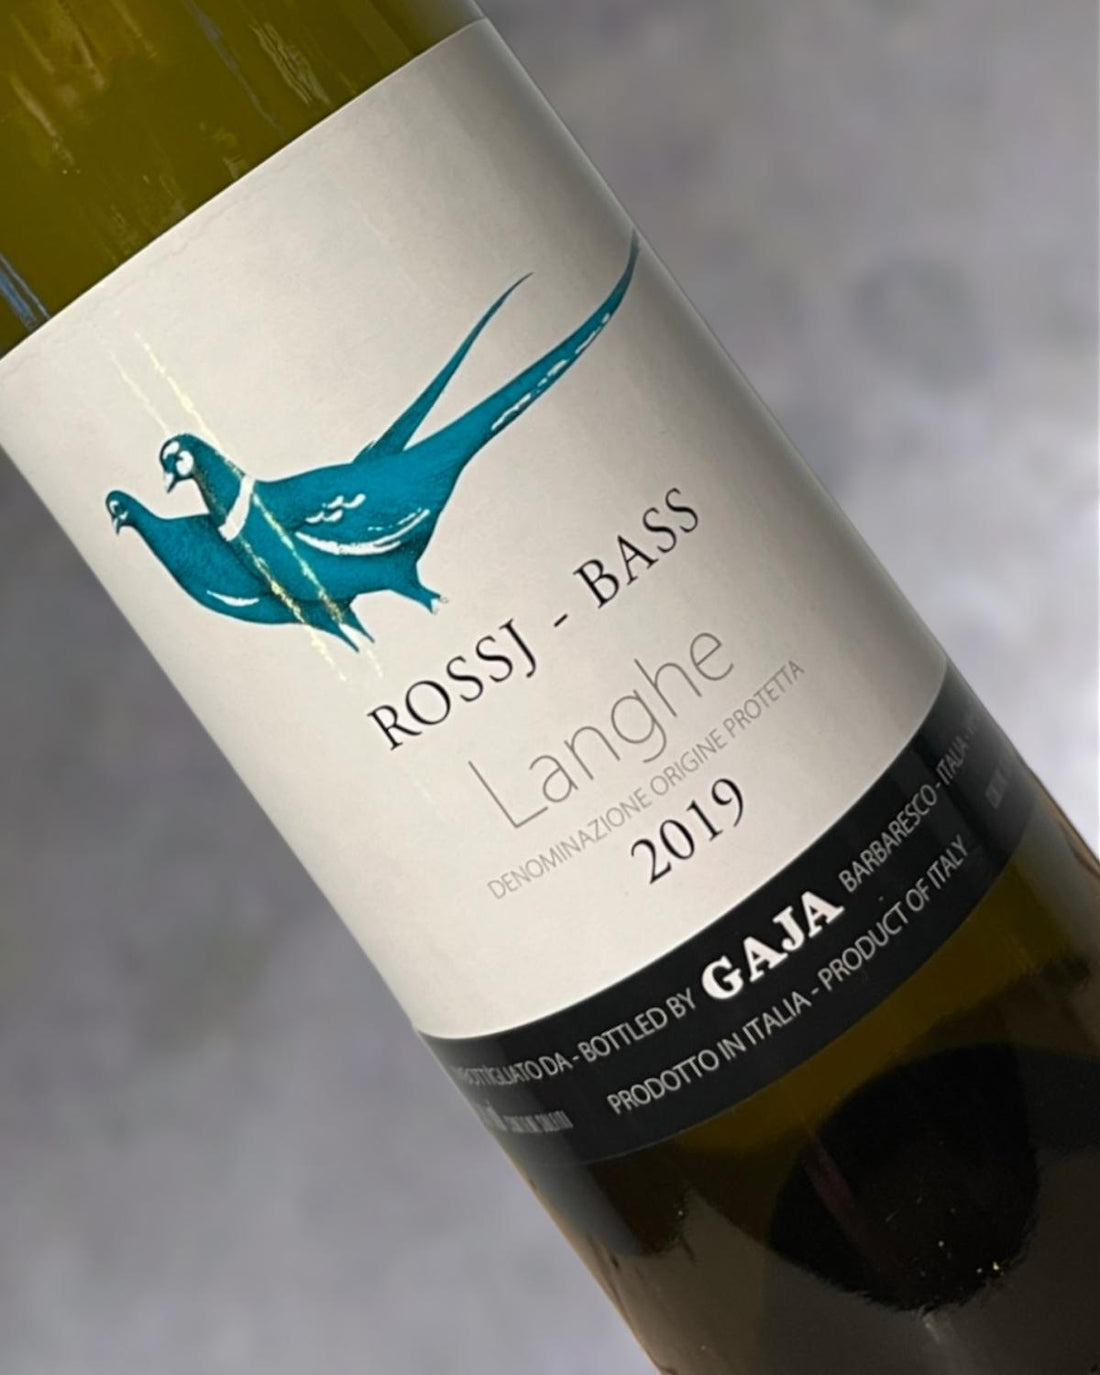 Gaja Rossj-Bass Langhe Chardonnay